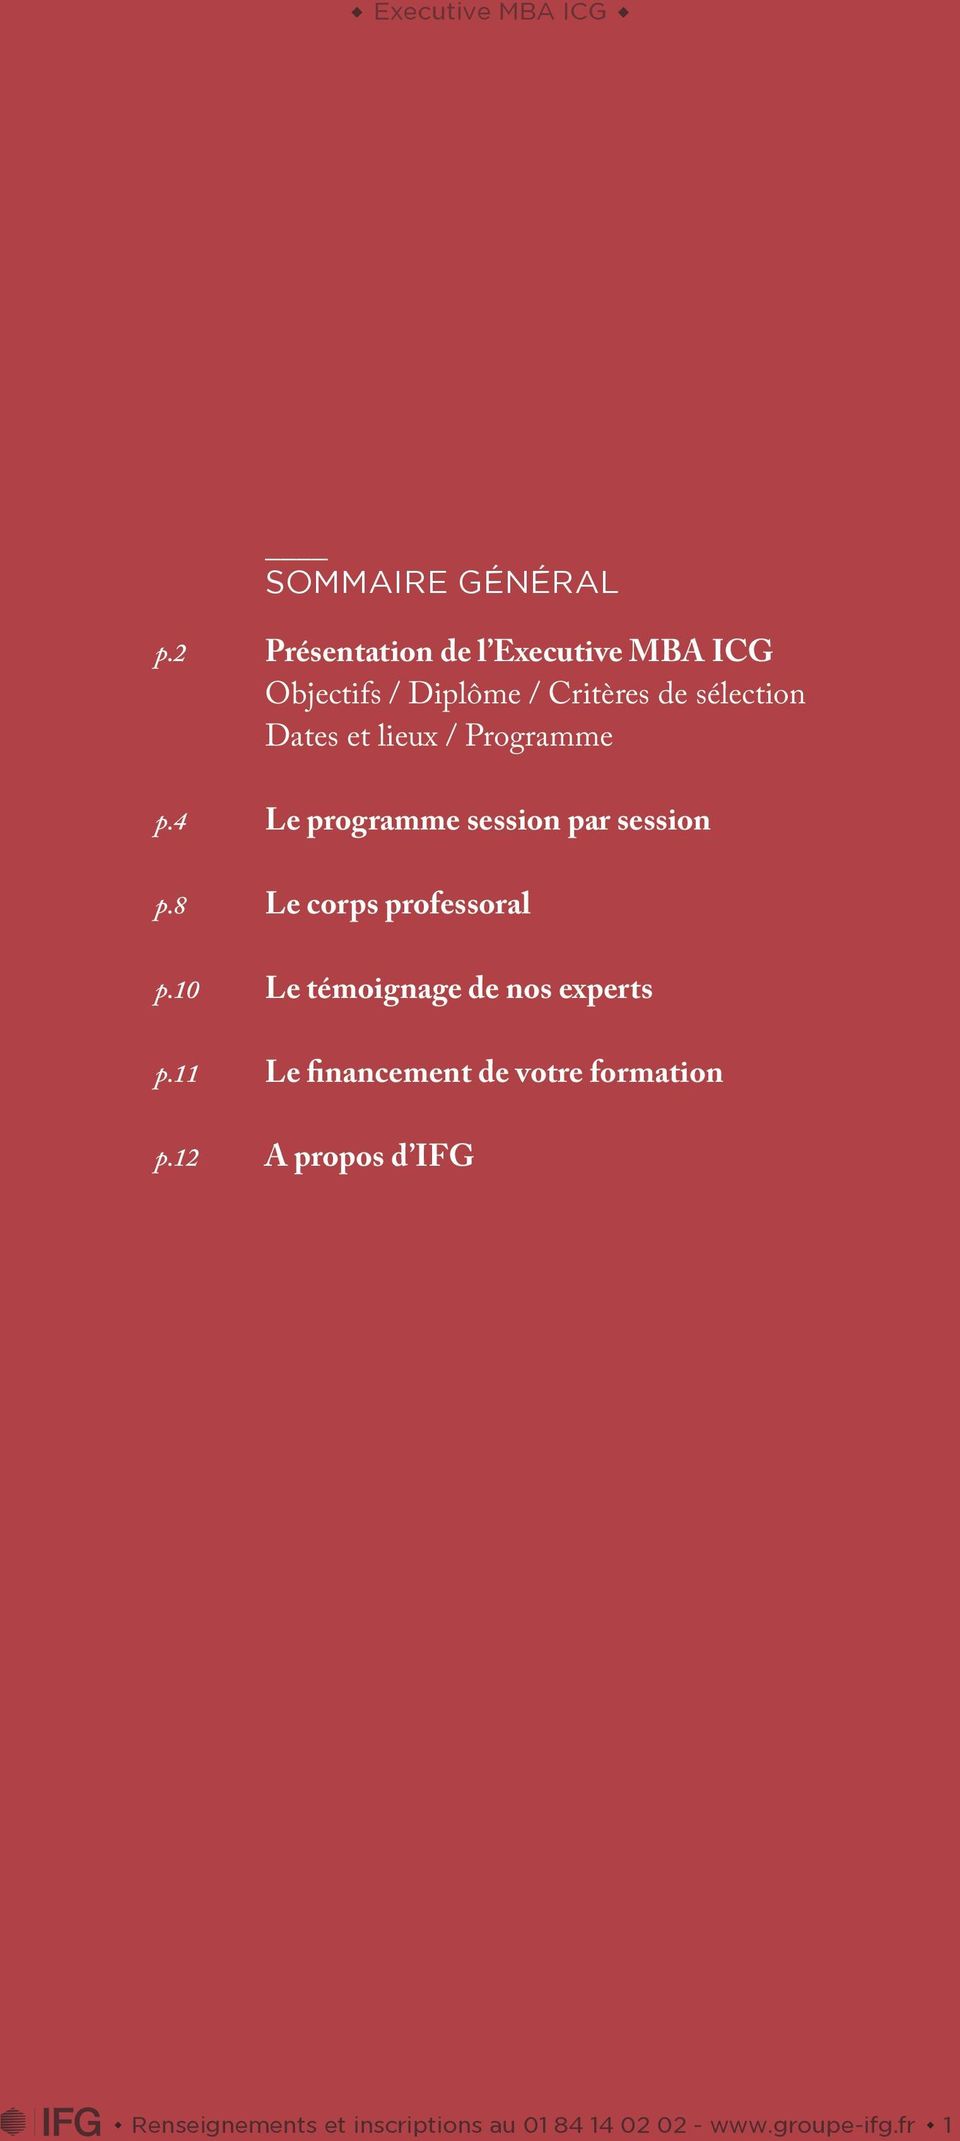 et lieux / Programme Le programme session par session Le corps professoral Le témoignage